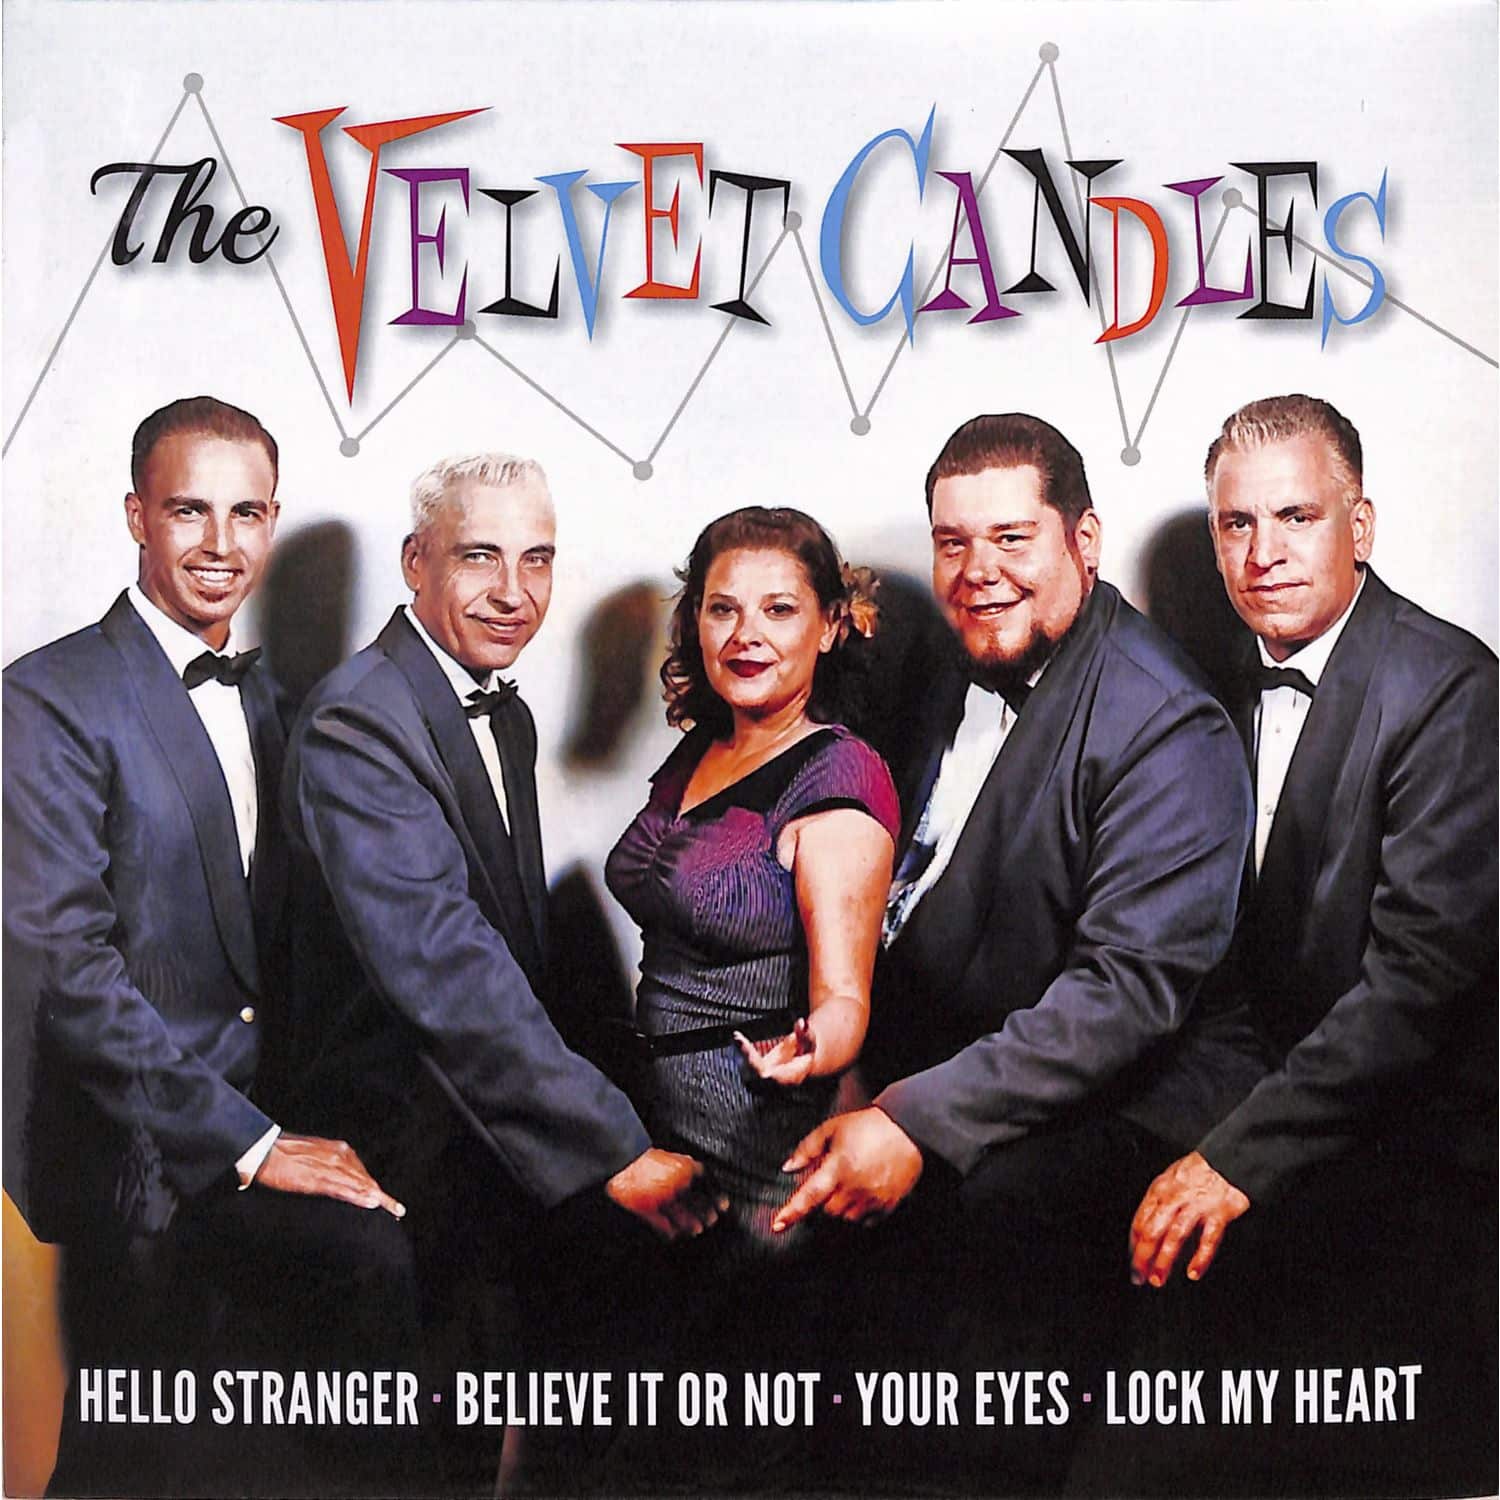 The Velvet Candles - THE VELVET CANDLES EP 